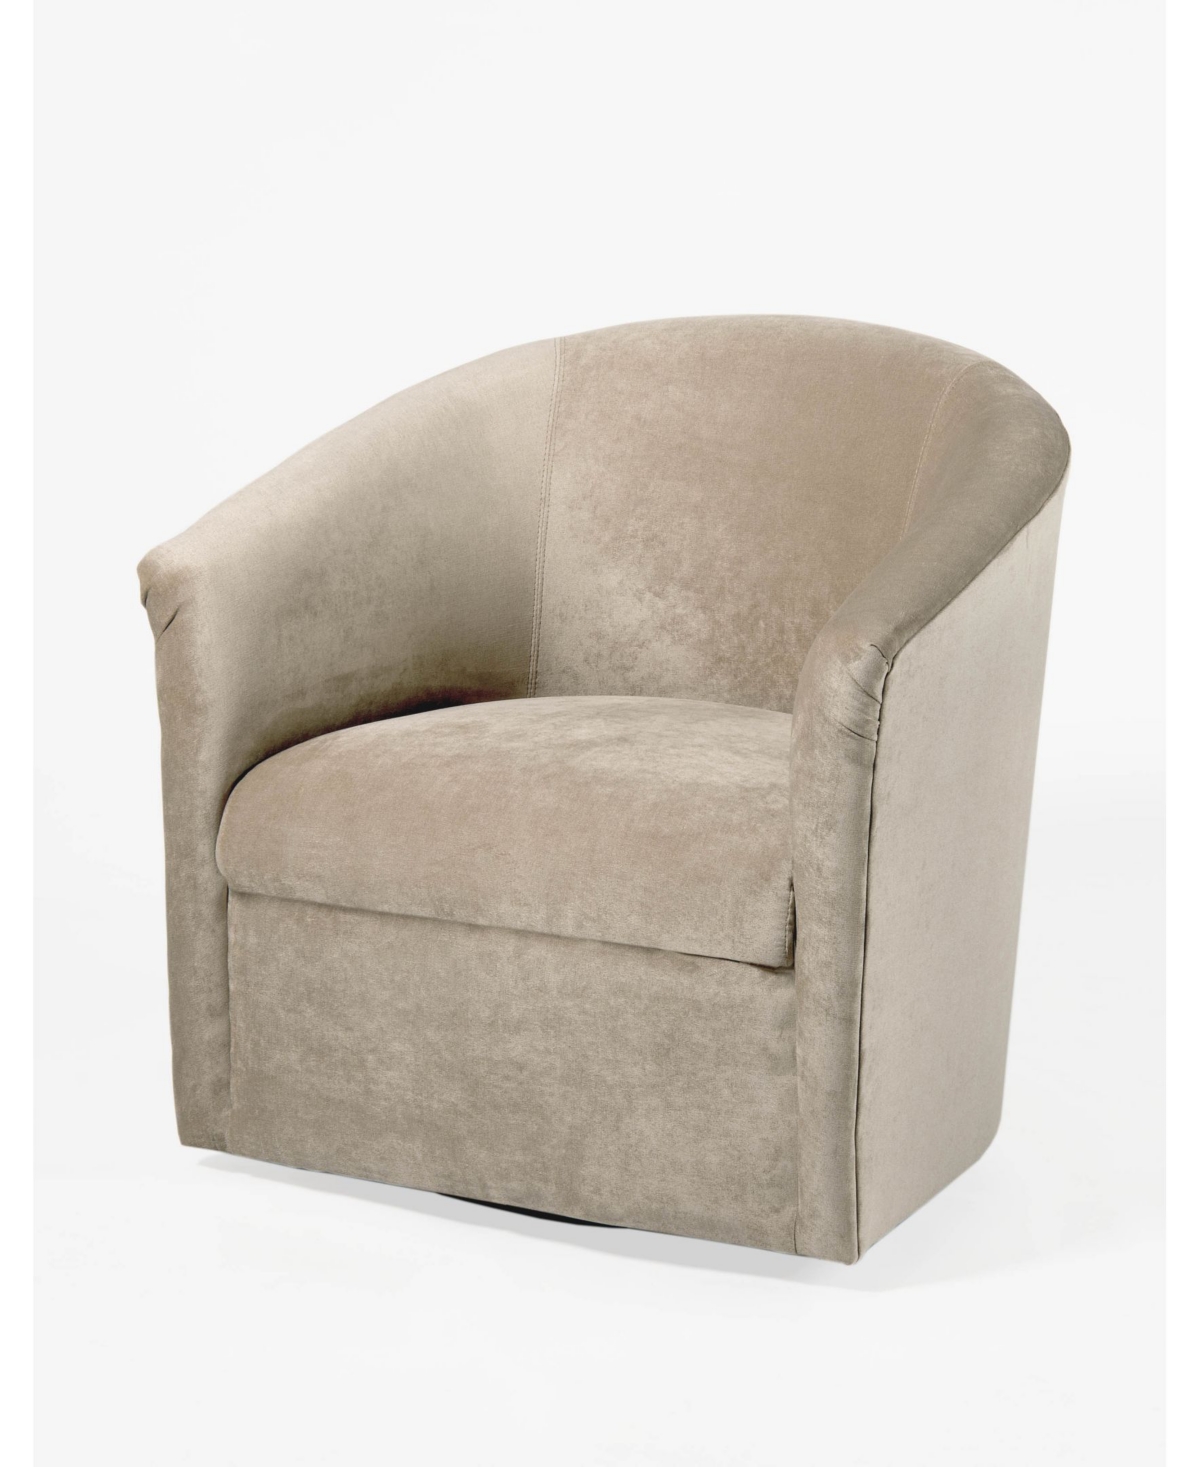 Comfort Pointe Elizabeth Swivel Chair In Light Beige